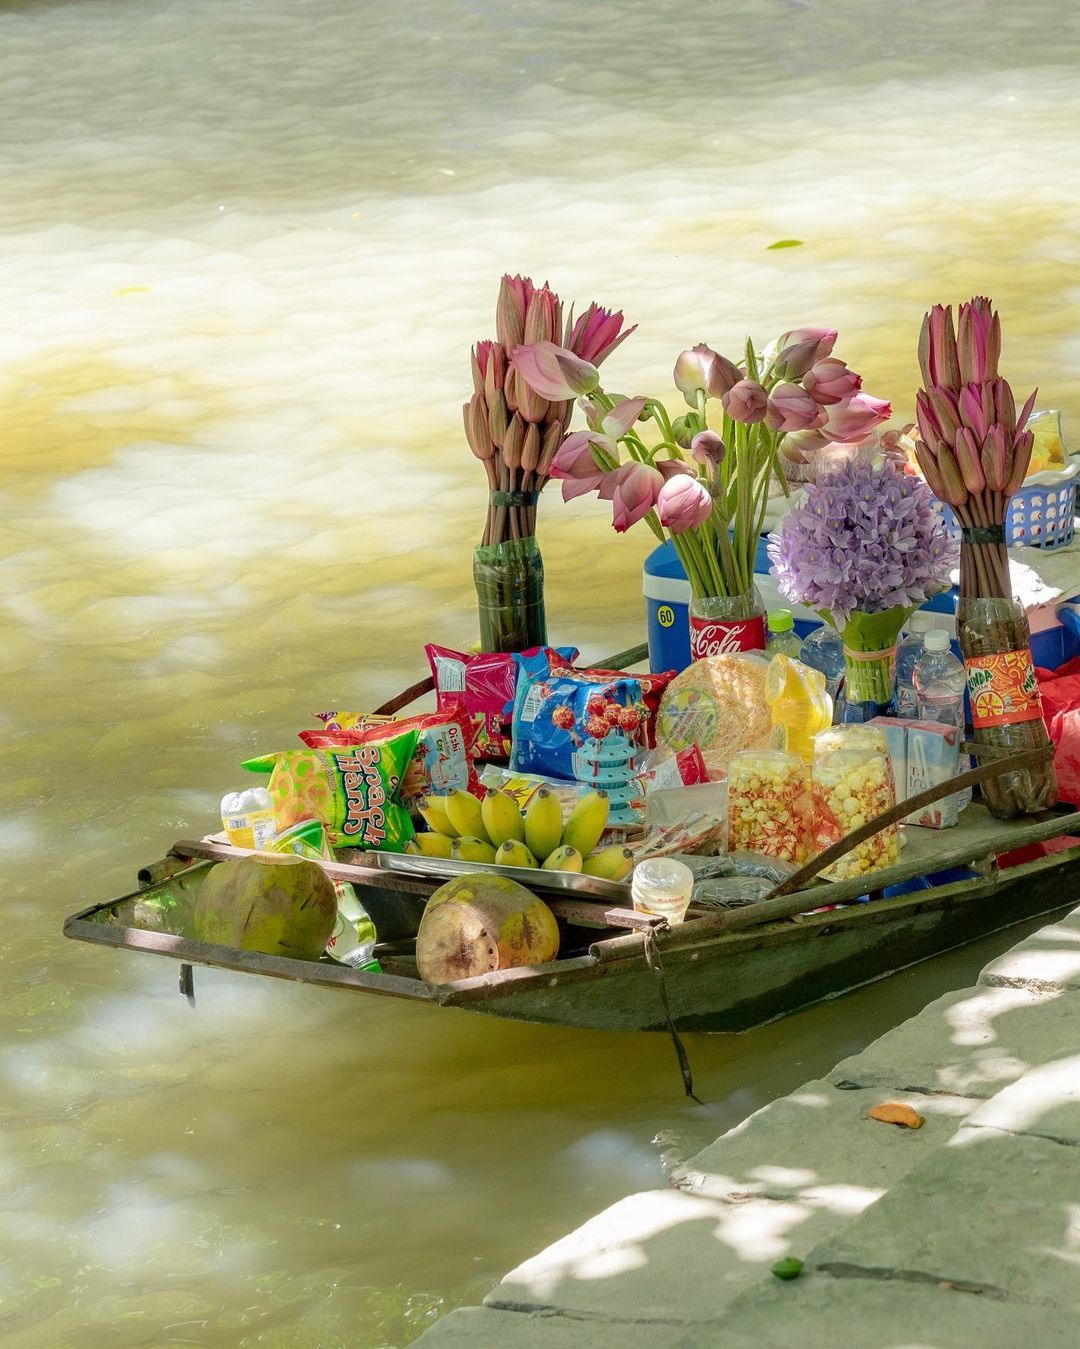 Du khách nước ngoài ngỡ ngàng trước cảnh này khi ngồi thuyền trải nghiệm ở Ninh Bình - Ảnh 8.